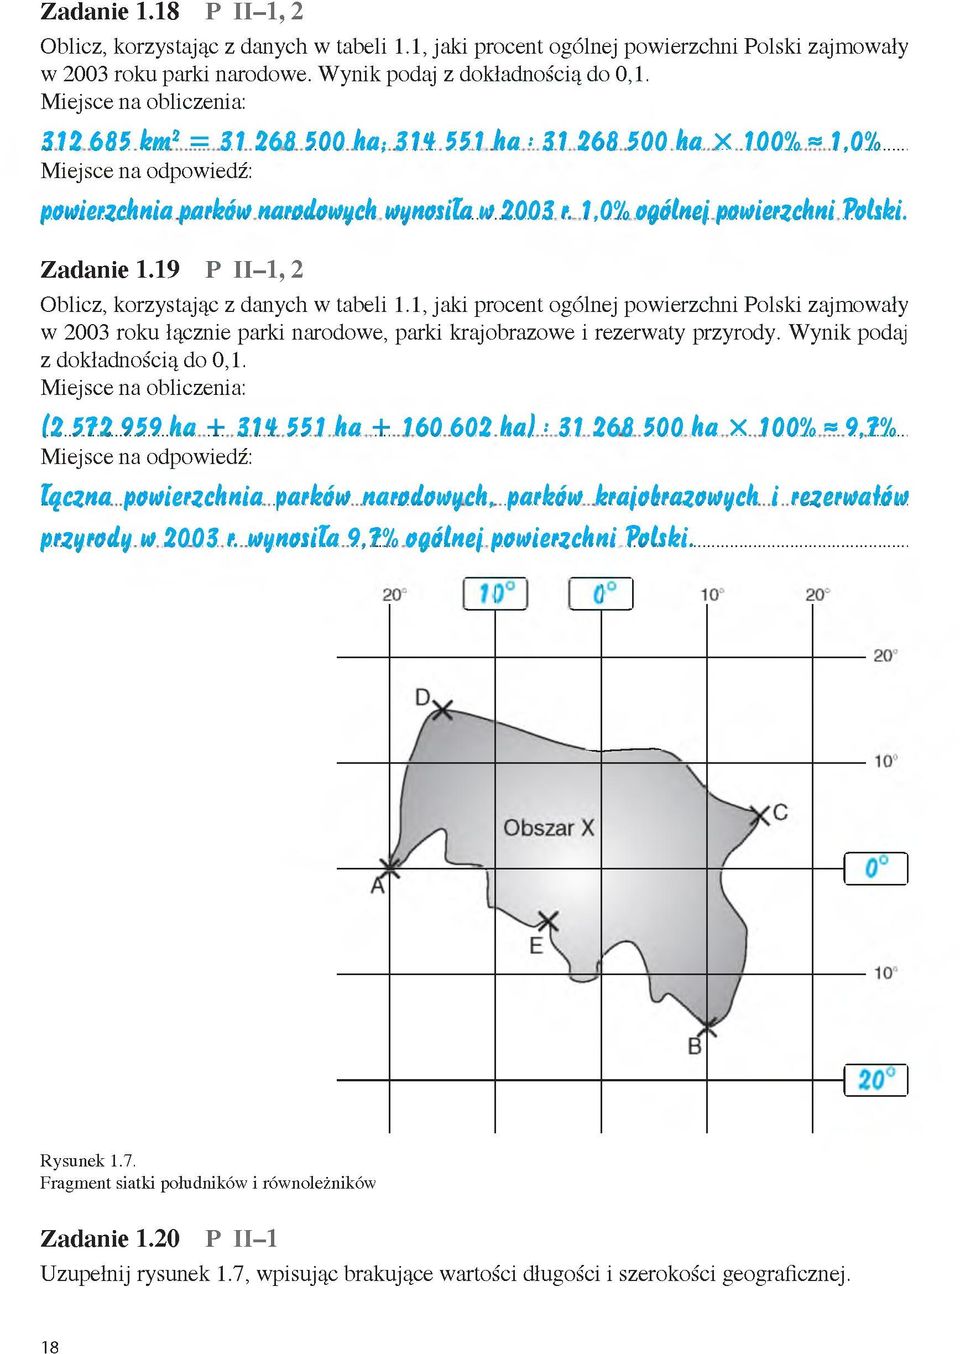 Z ad an ie 1.19 P II-1, 2 Oblicz, korzystając z danych w tabeli 1.1, jaki procent ogólnej powierzchni Polski zajmowały w 2003 roku łącznie parki narodowe, parki krajobrazowe i rezerwaty przyrody.